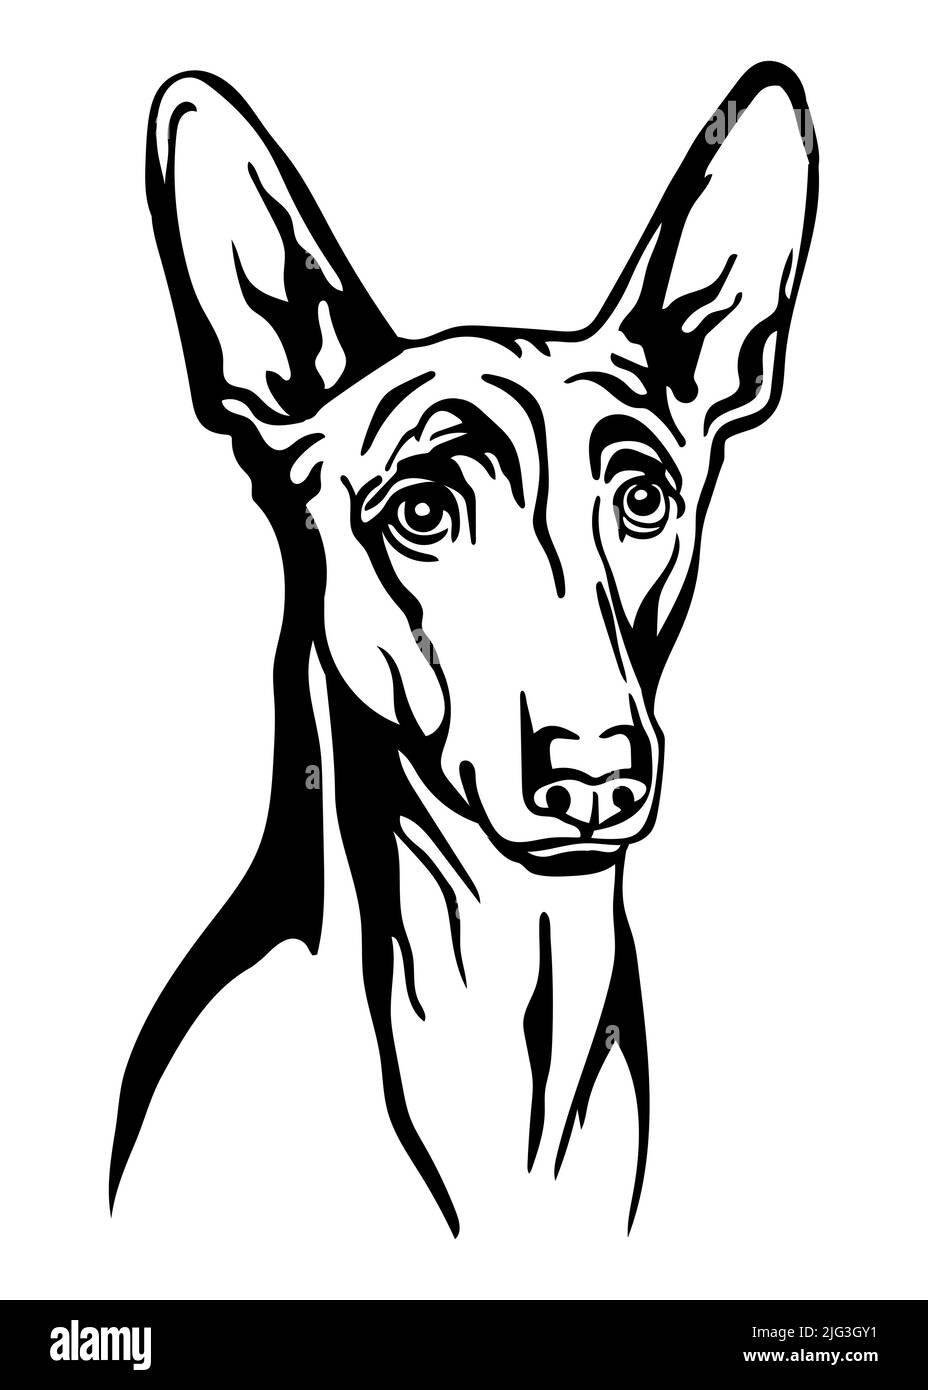 Pharaon cane nero contorno ritratto. Testa cilindrica nella vista frontale illustrazione vettoriale isolata su bianco. Per arredamento, design, stampa, poster, cartoline, adesivo, Illustrazione Vettoriale